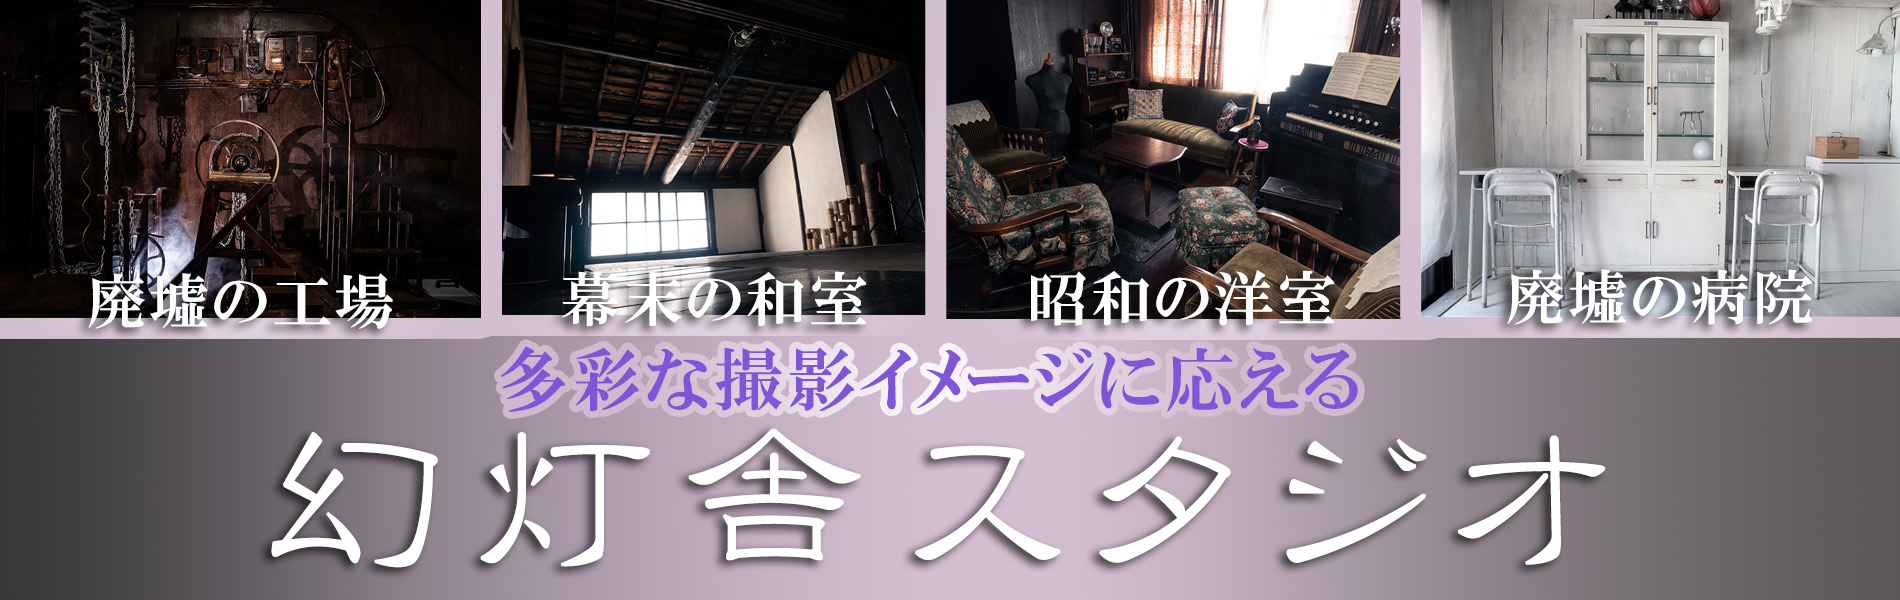 京都のスキマ幻灯舎スタジオのトップ画像